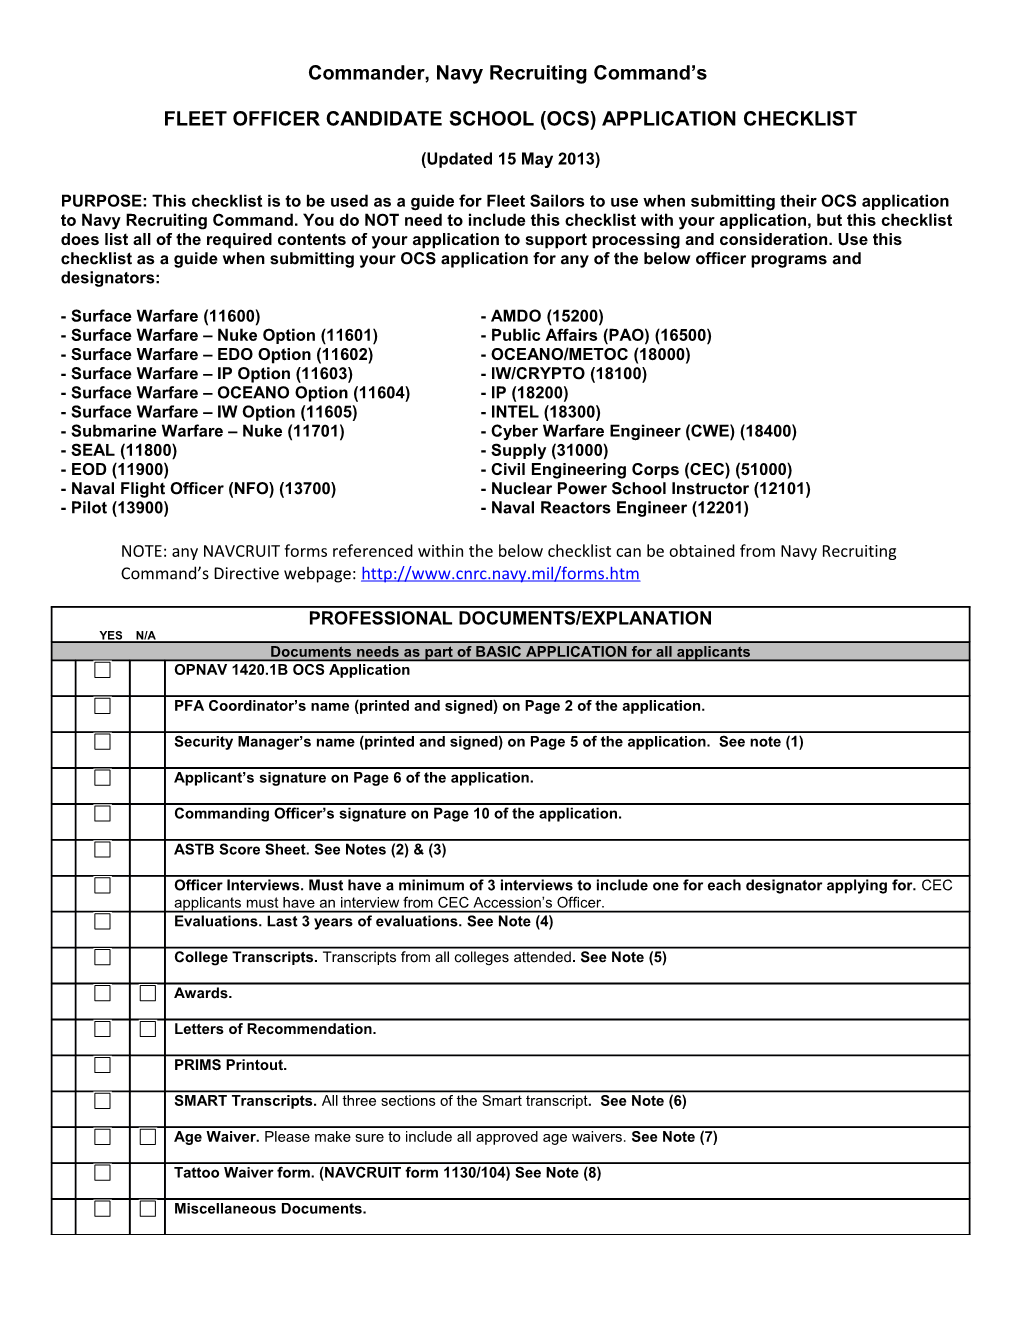 Fleet Officer Candidate School (Ocs) Application Checklist